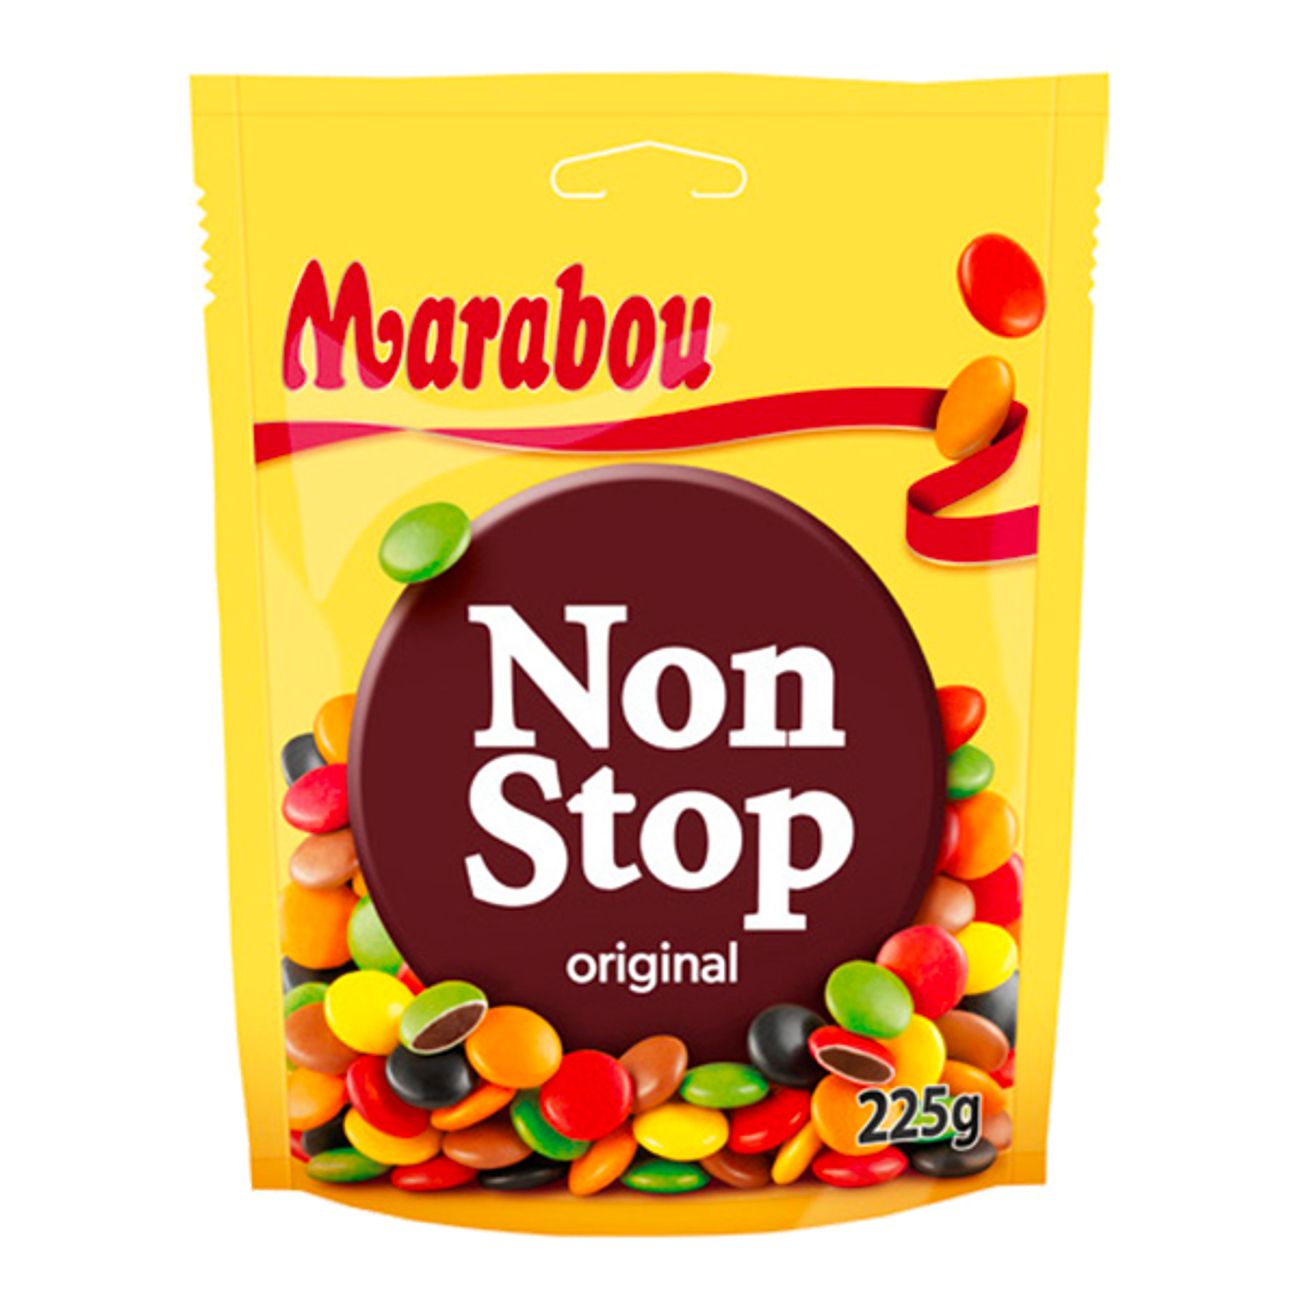 marabou-non-stop-party-size-75118-1